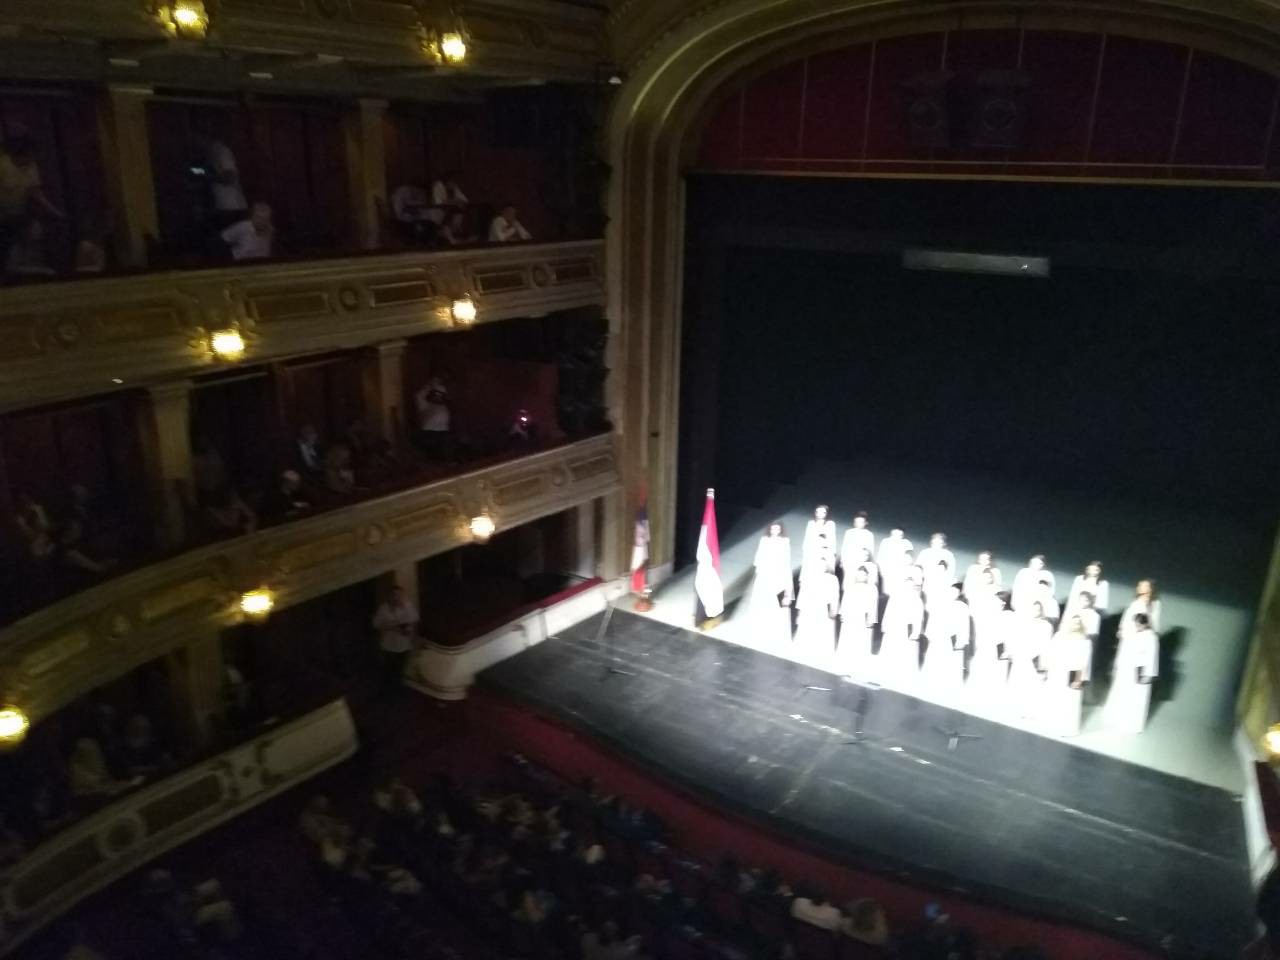 Национални Дан Египта - Народно позориште у Београду 2018.